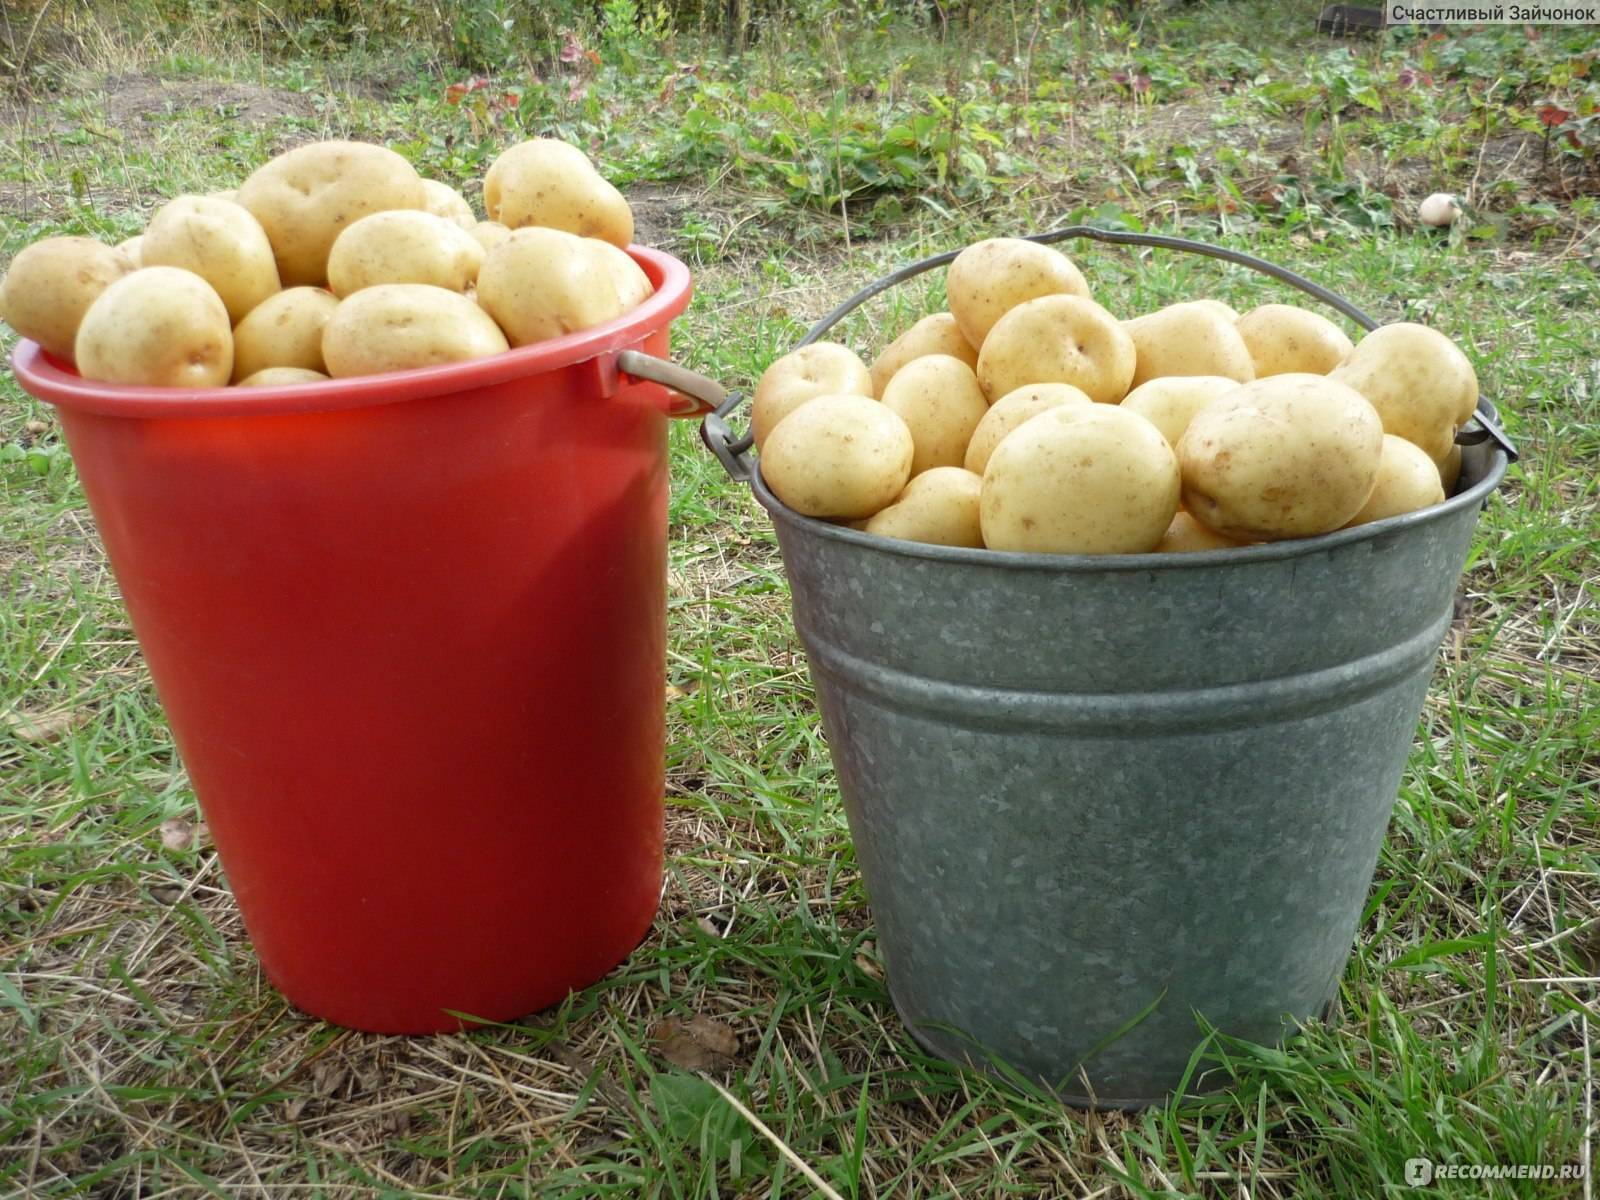 Описание и характеристика картофеля сорта киви, правила посадки и ухода